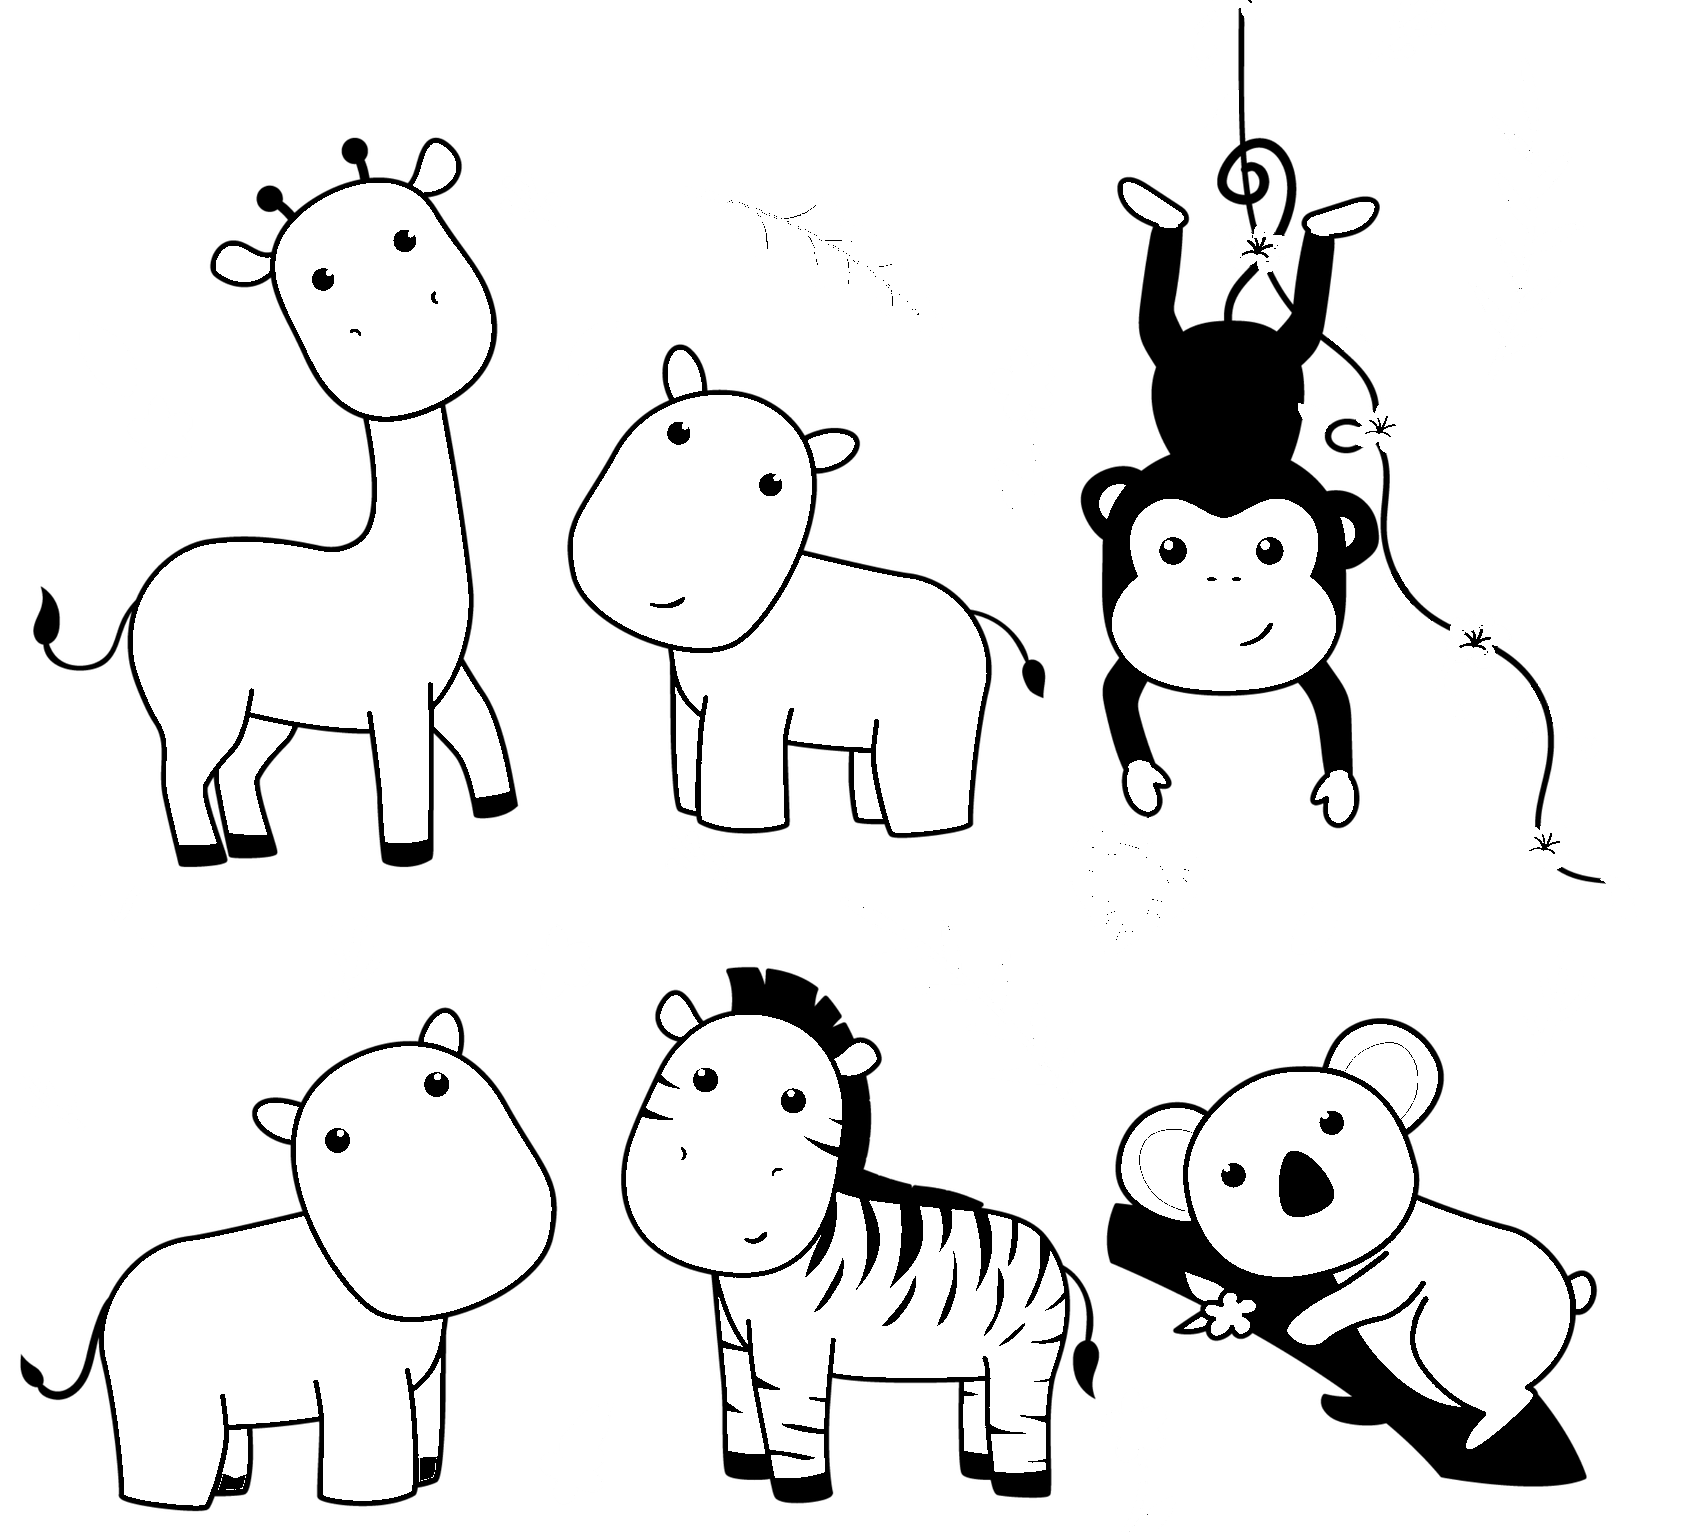 Dibujo para colorear de jirafas kawaii y animales del bosque